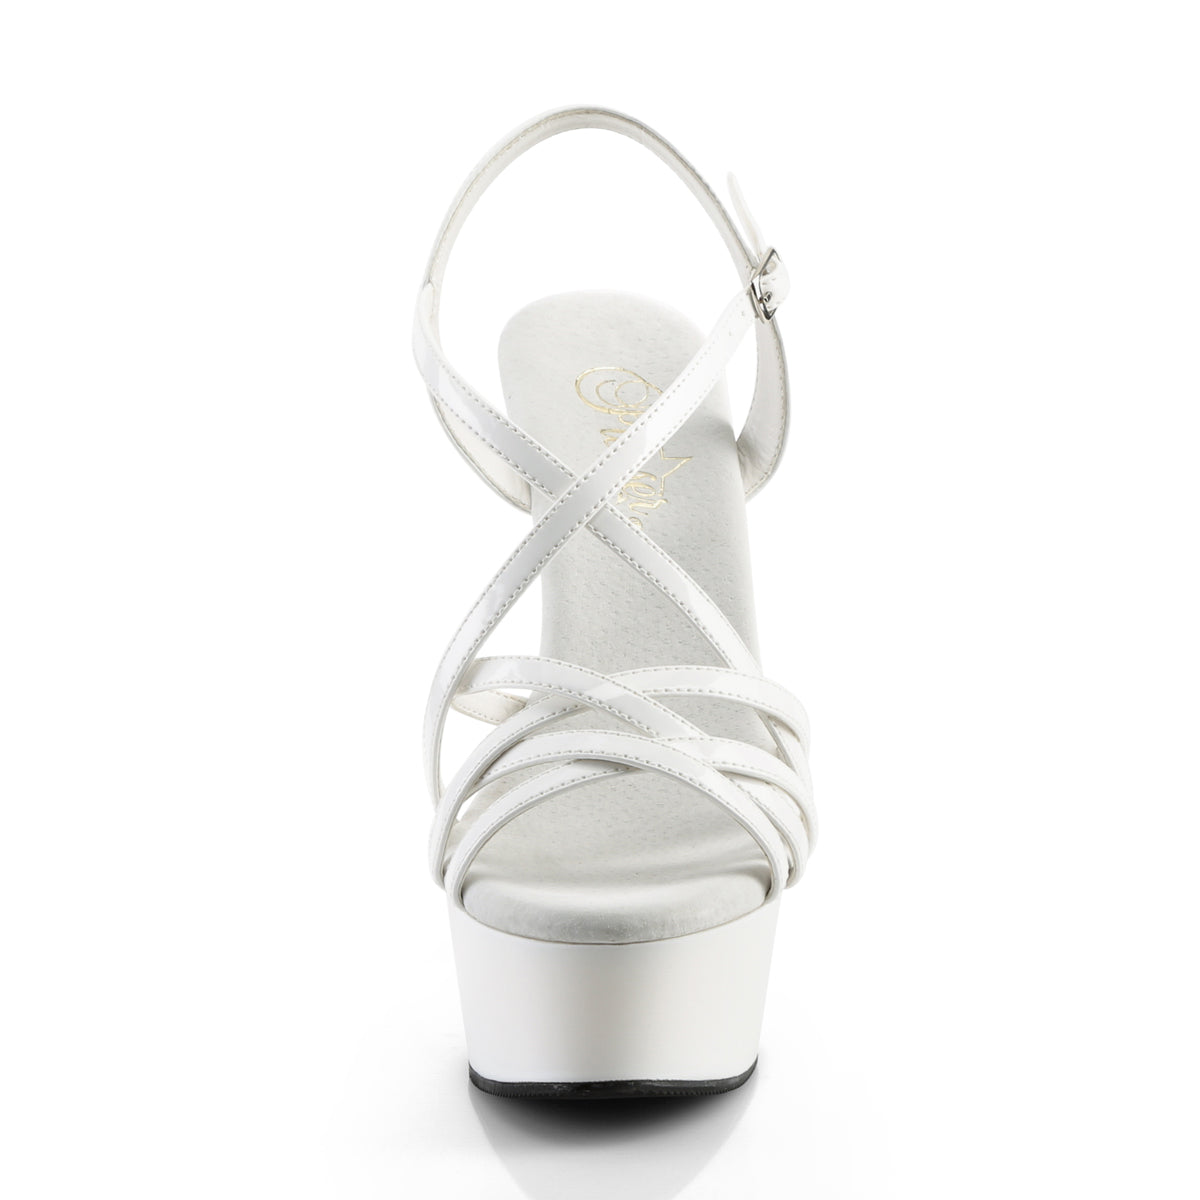 DELIGHT-613 White Patent Platform Sandal Pleaser